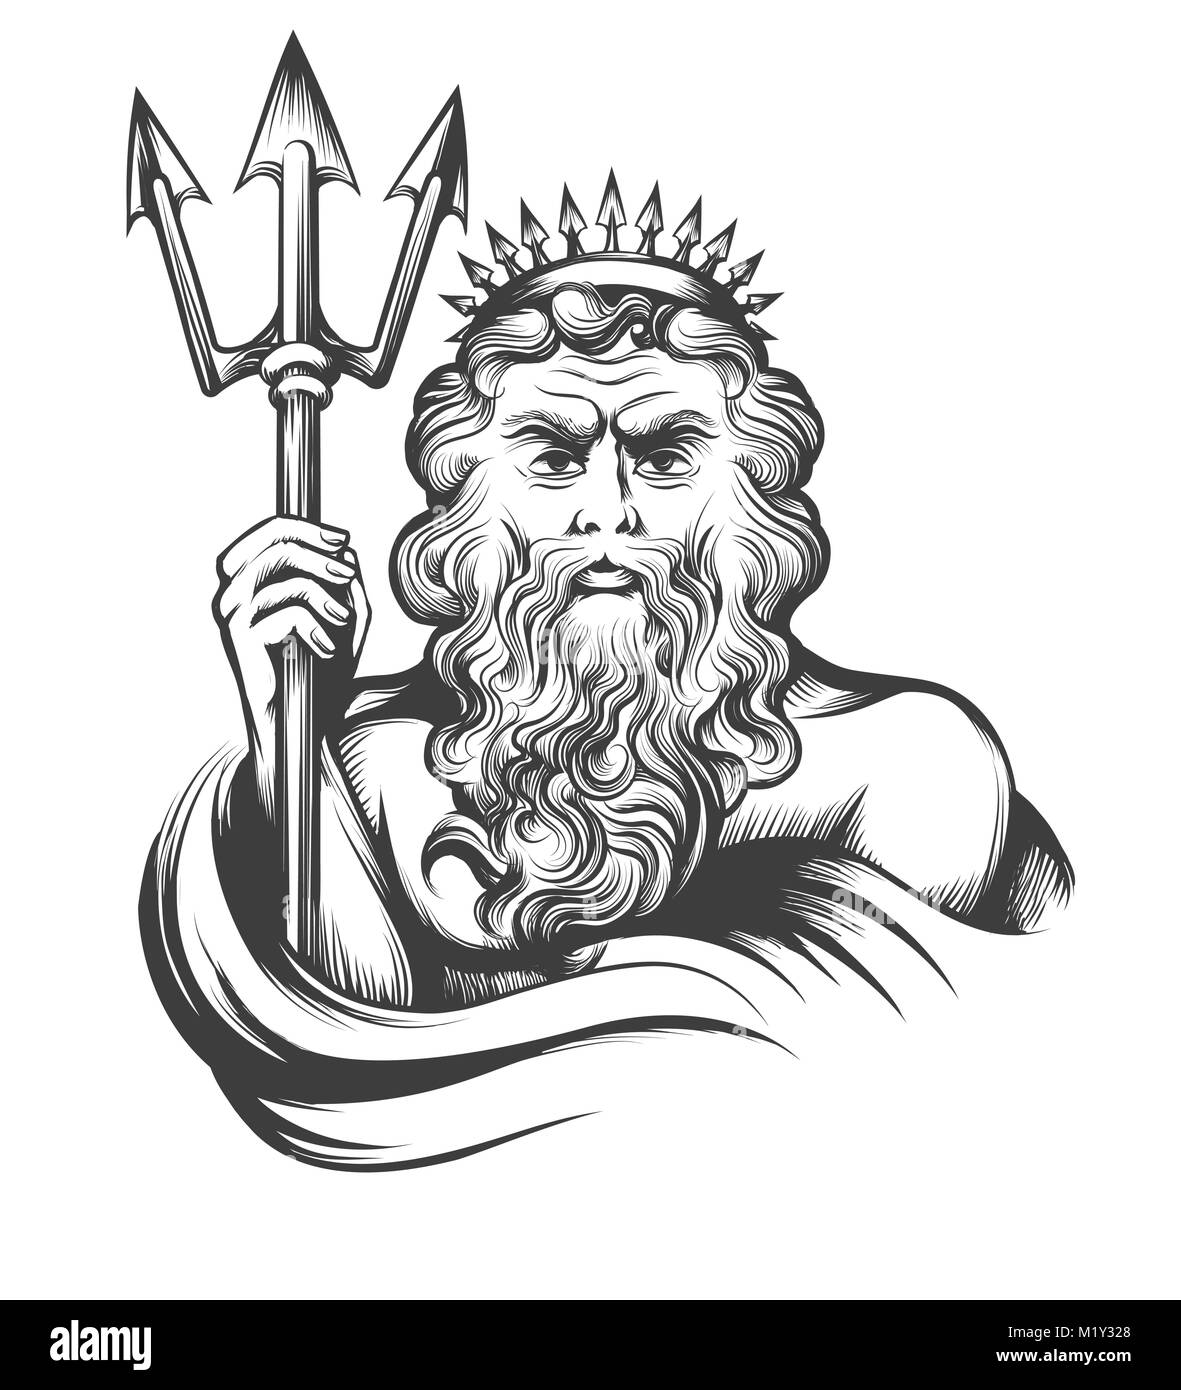 Neptun mit Dreizack in Gravur Stil auf weißem Hintergrund dargestellt. Vector Illustration. Stock Vektor